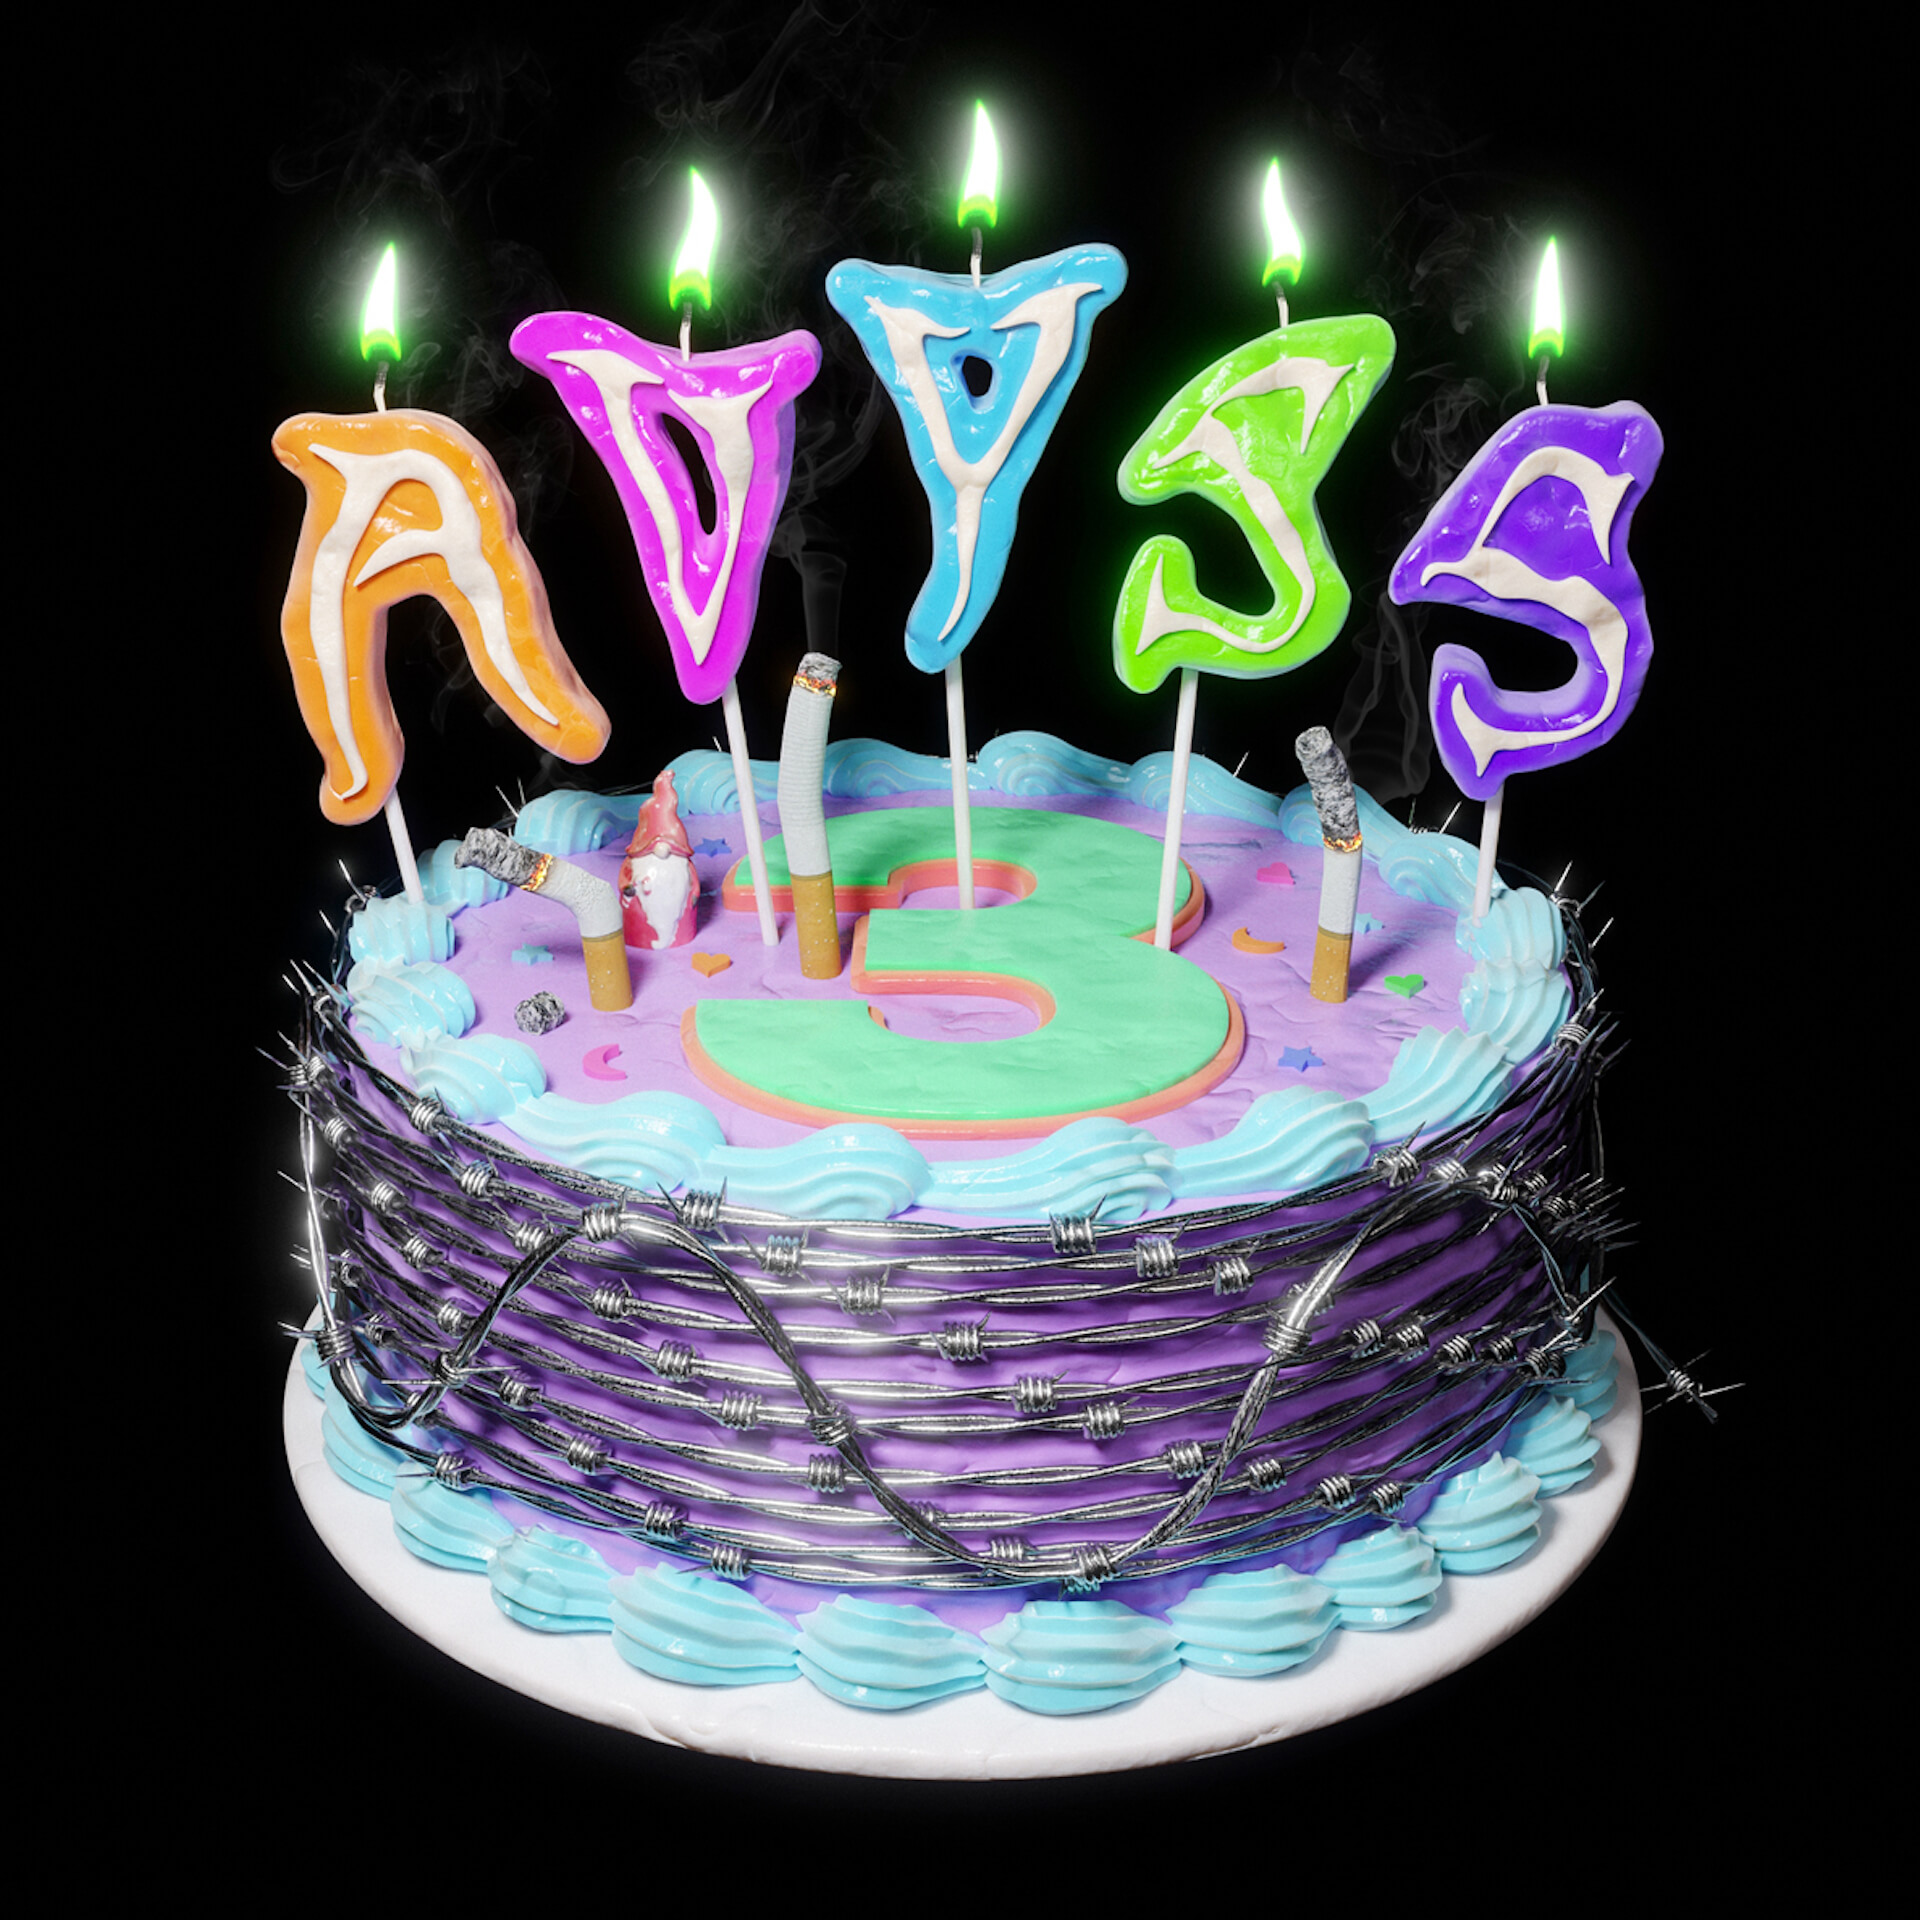 AVYSSが3周年を記念したオリジナルゲーム「AVYSS COCOON」を公開！数量限定記念ステッカーがゲットできるチャンスも music211116_avyss-05